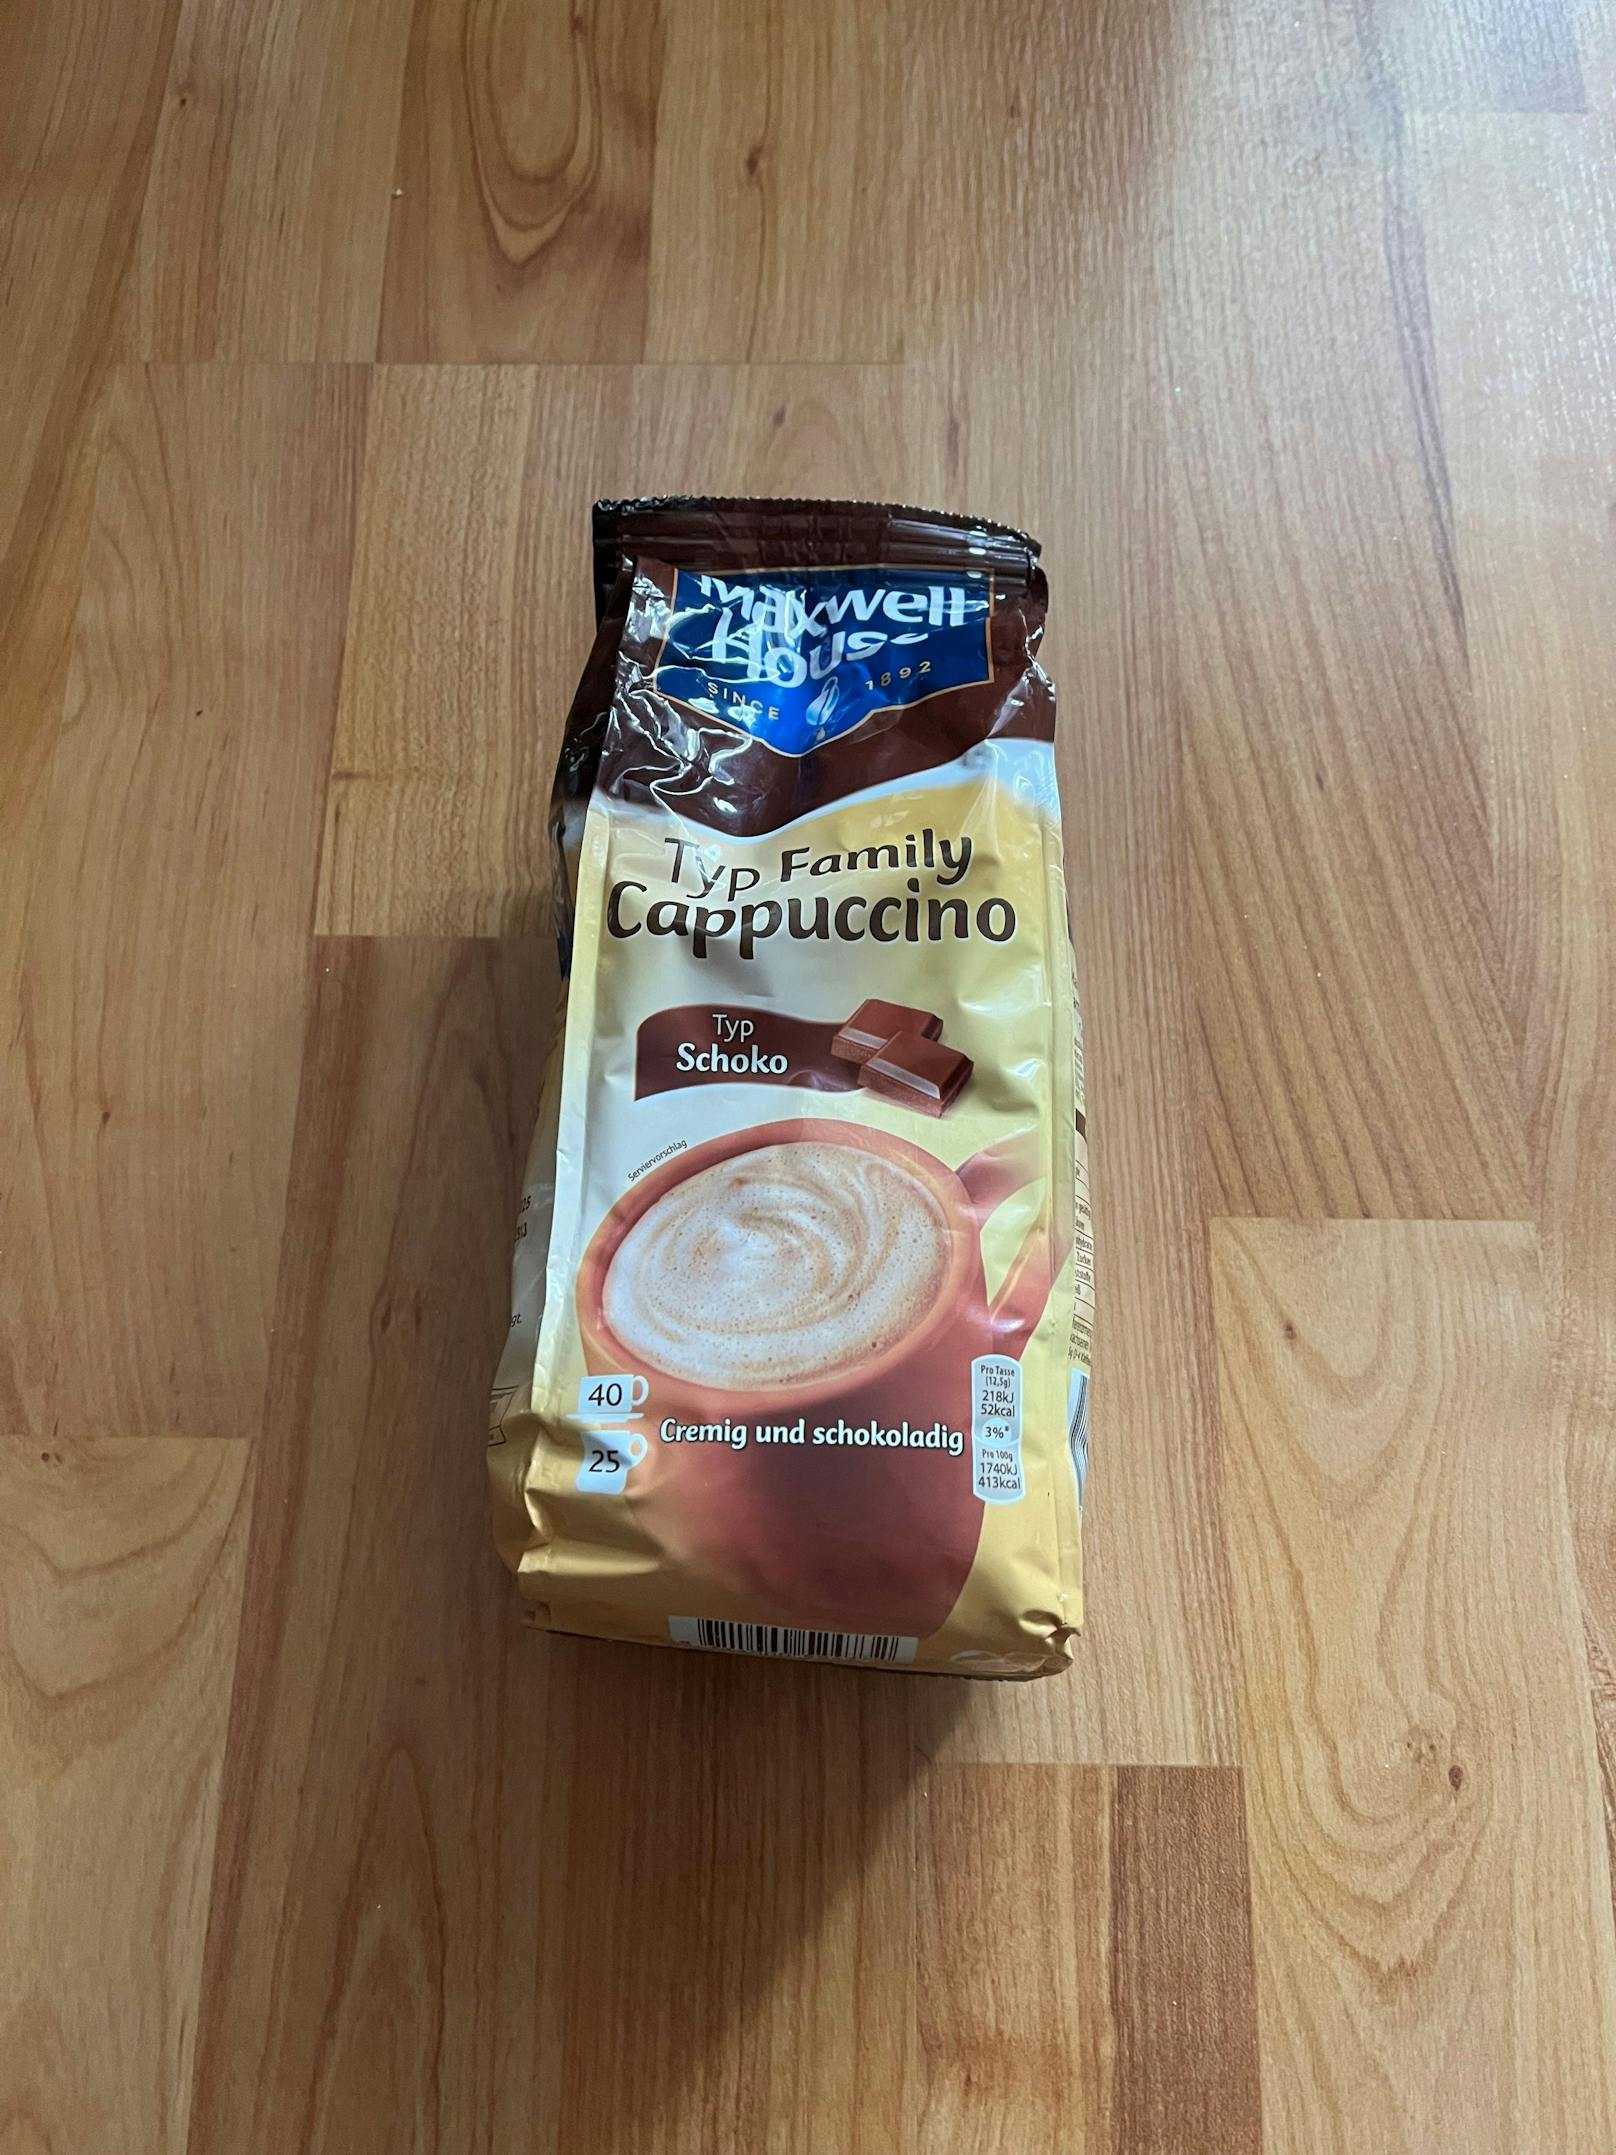 Der Kaffee kostet im Supermarkt 5,69 Euro - beim Diskonter ist er 2 Euro billiger.